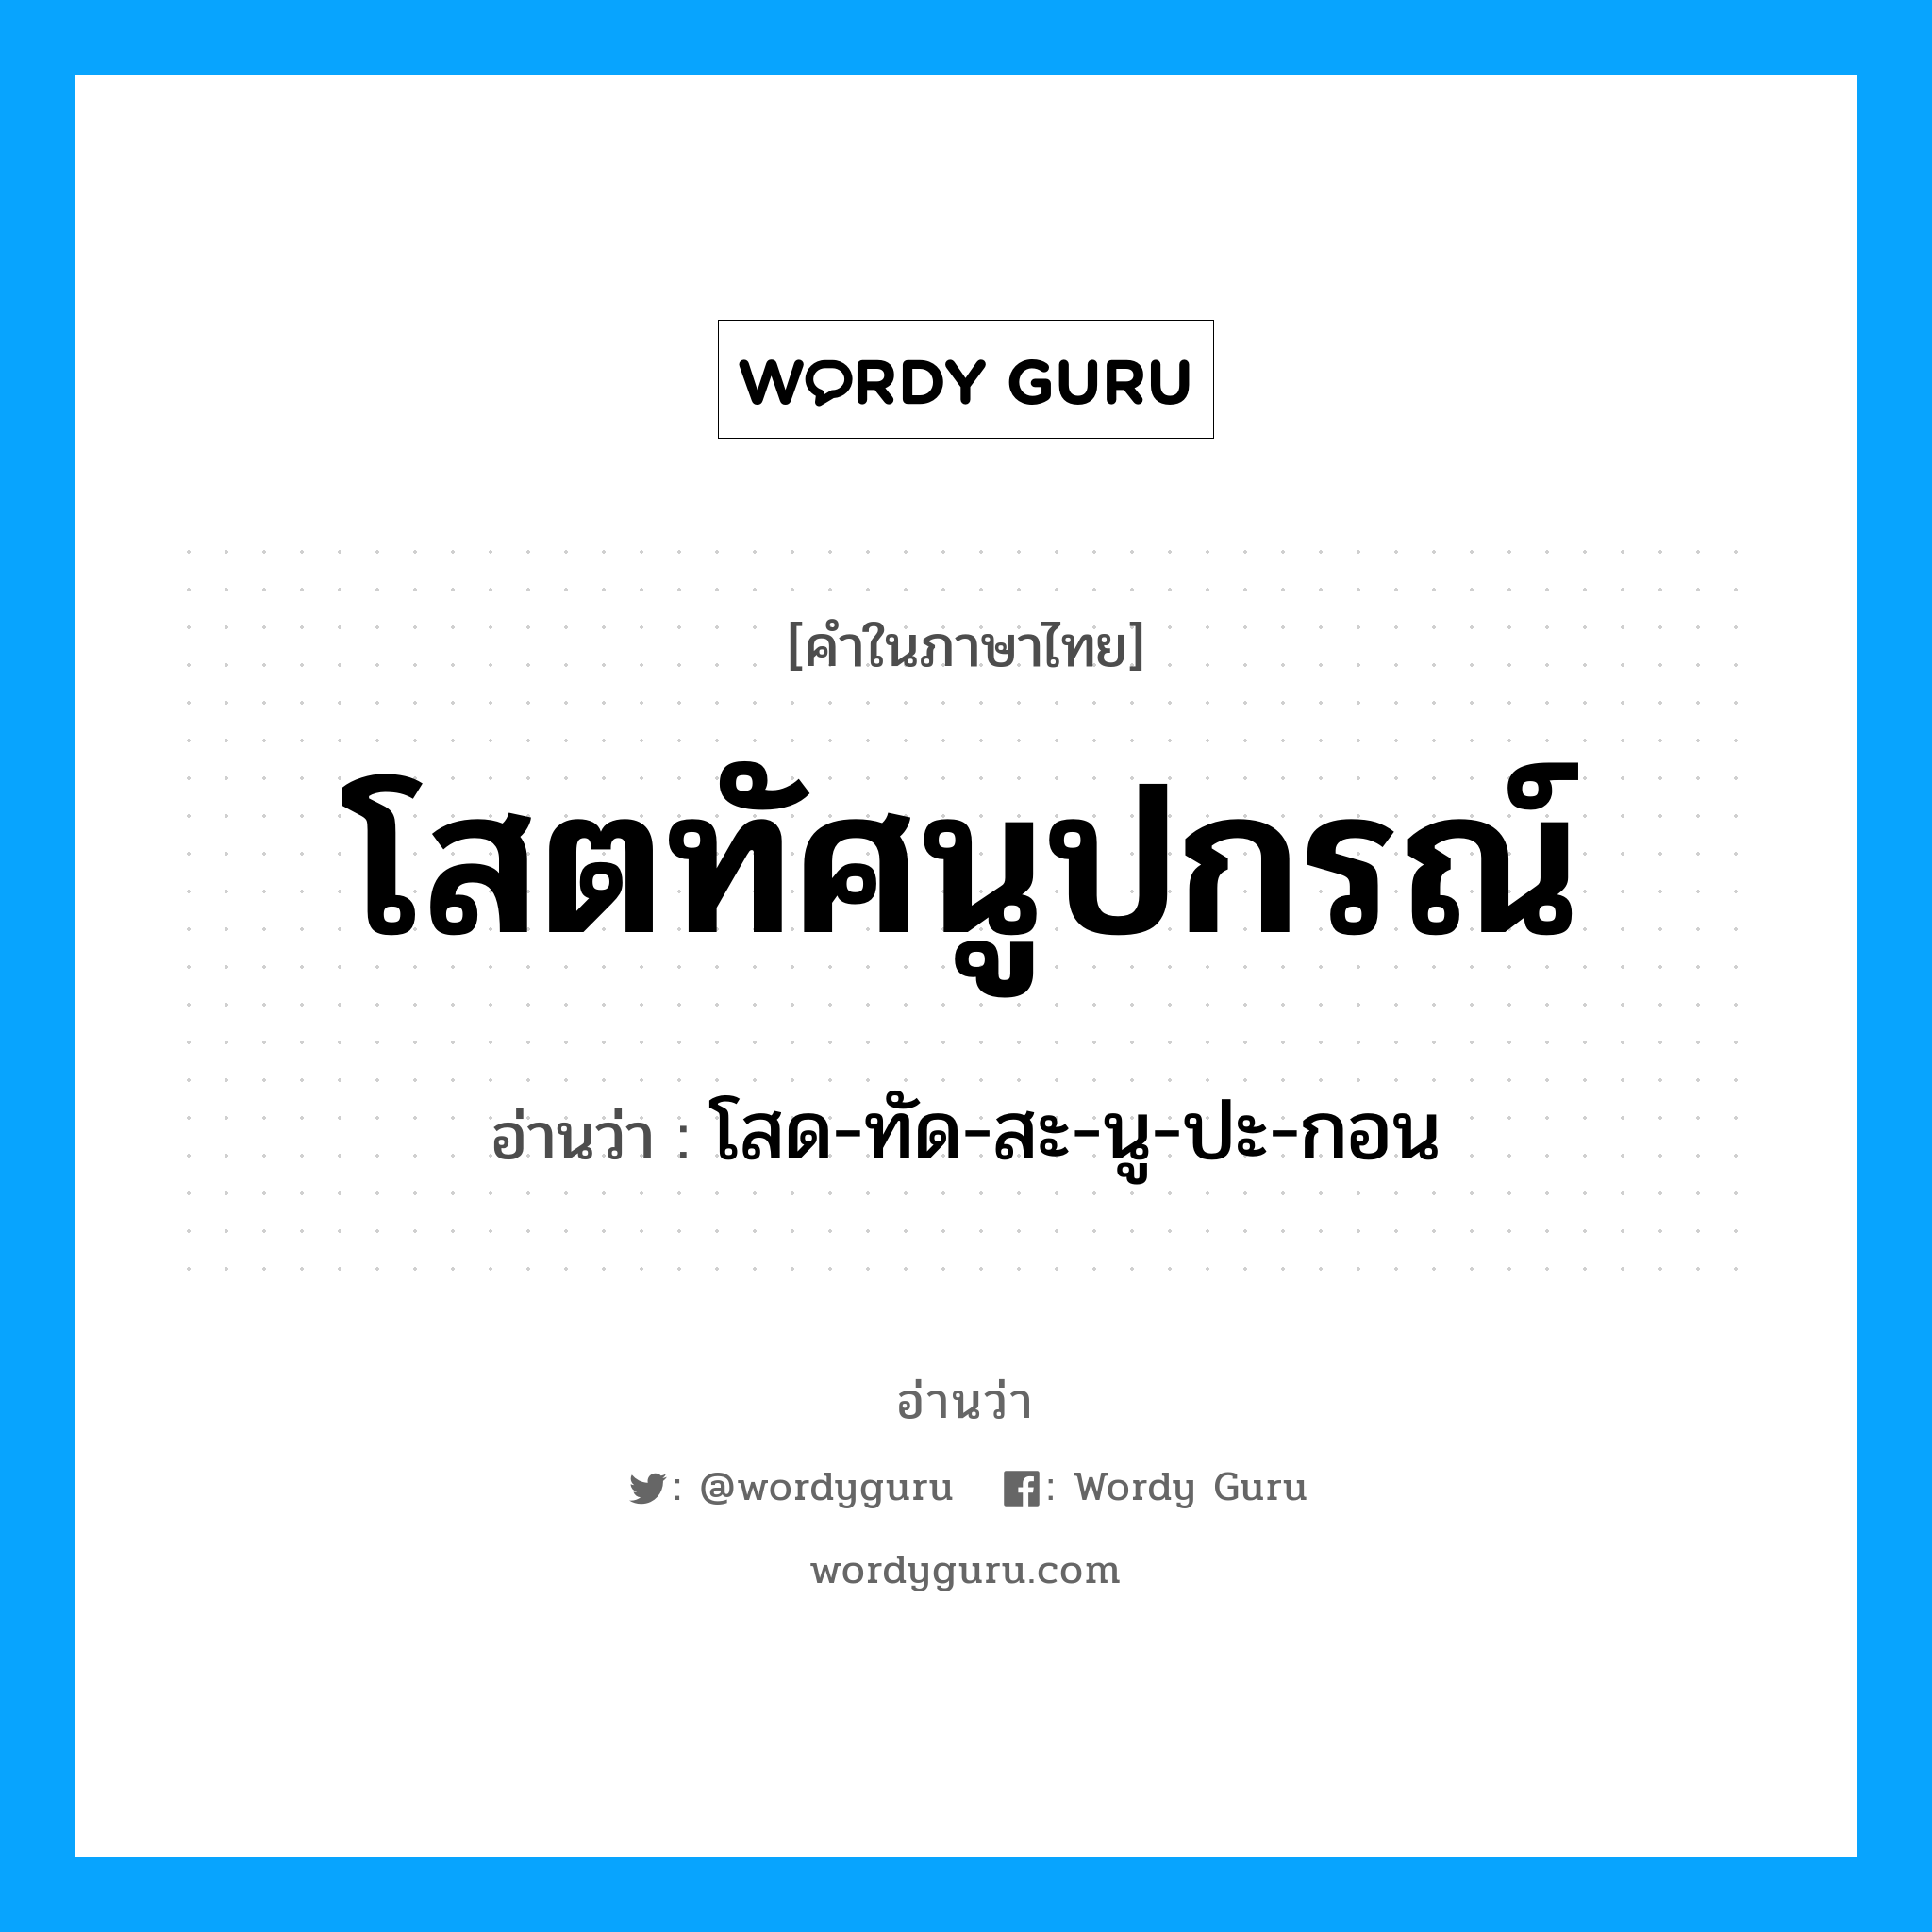 โสด-ทัด-สะ-นู-ปะ-กอน เป็นคำอ่านของคำไหน?, คำในภาษาไทย โสด-ทัด-สะ-นู-ปะ-กอน อ่านว่า โสตทัศนูปกรณ์